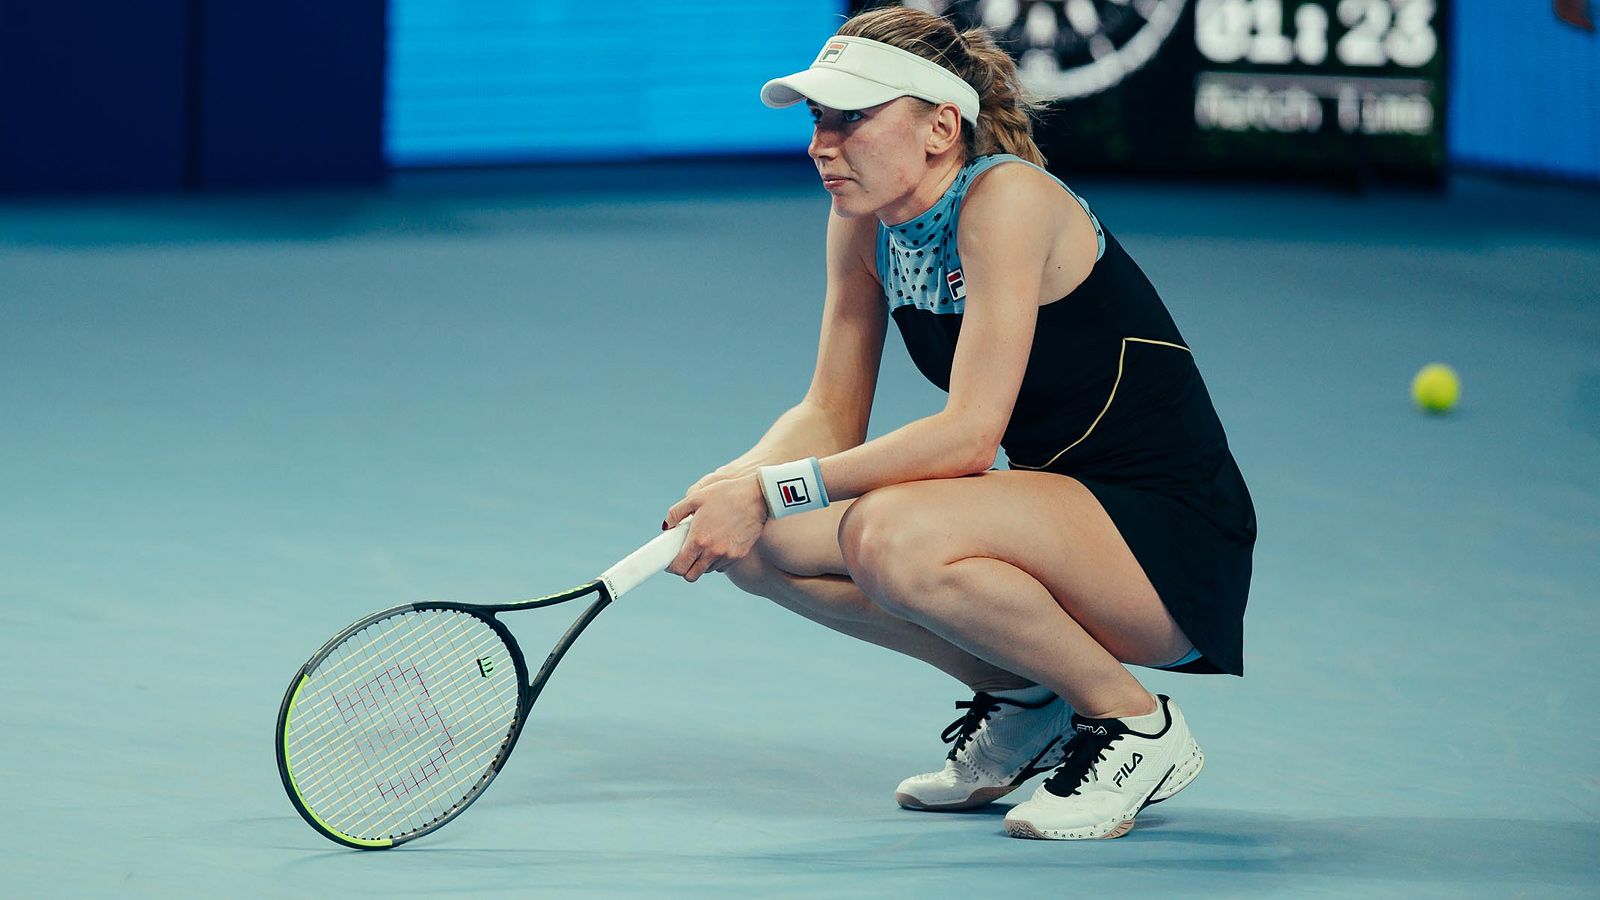 Александрова уступила Путинцевой во втором круге турнира WTA в Индиан-Уэллсе